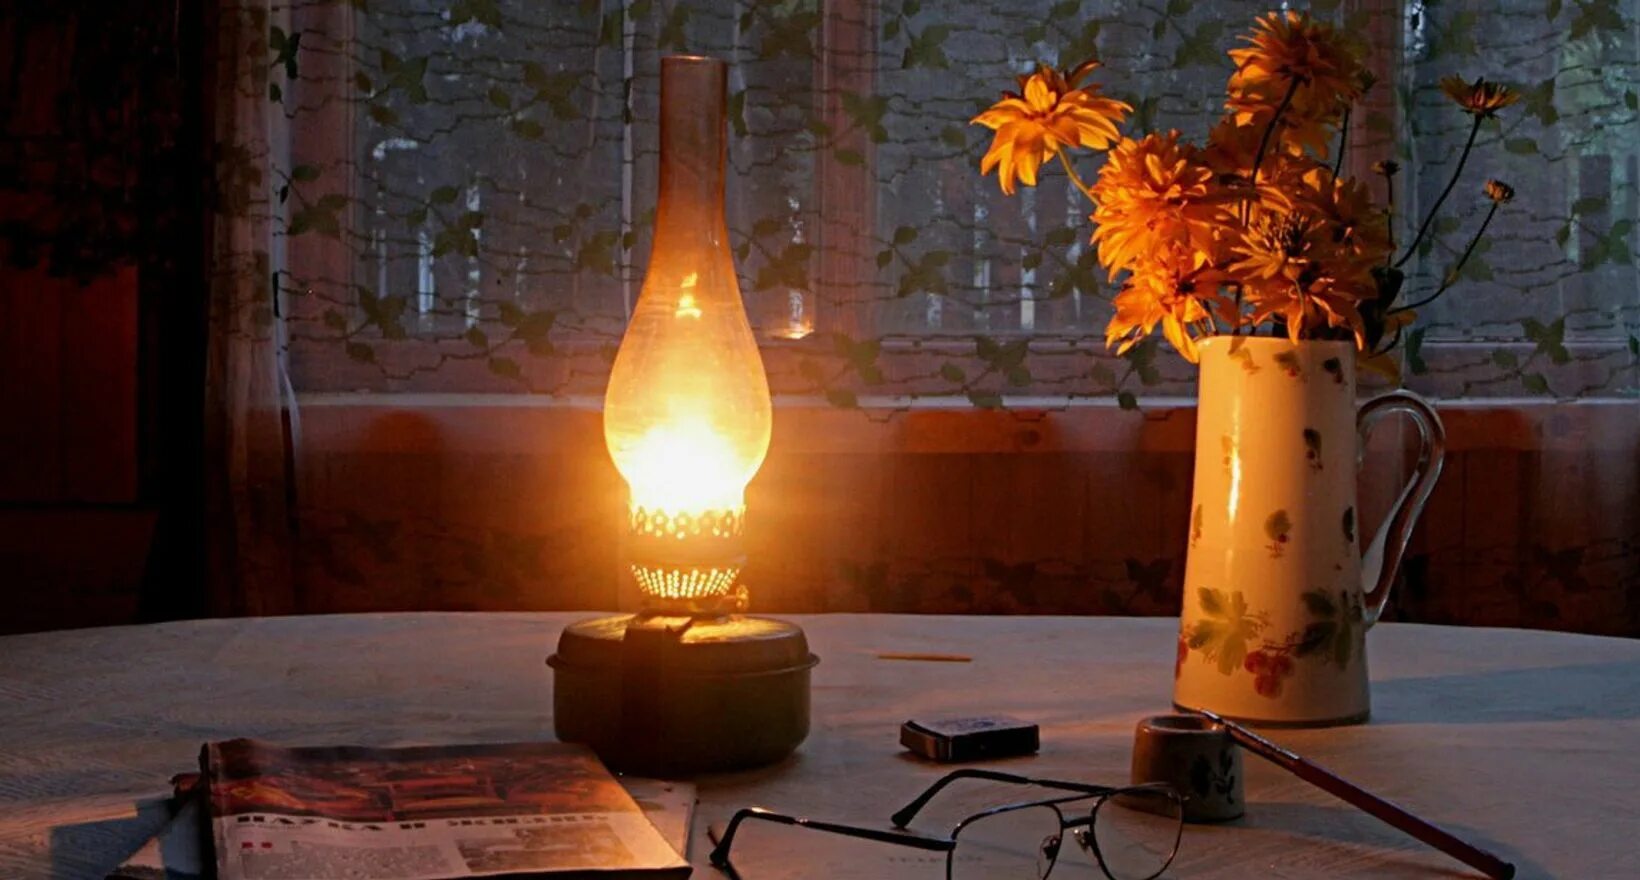 Лучина 19 век керосиновая лампа. Лампада керосинка. Лучина свеча керосиновая лампа. Старинная лампа. Костер источник света